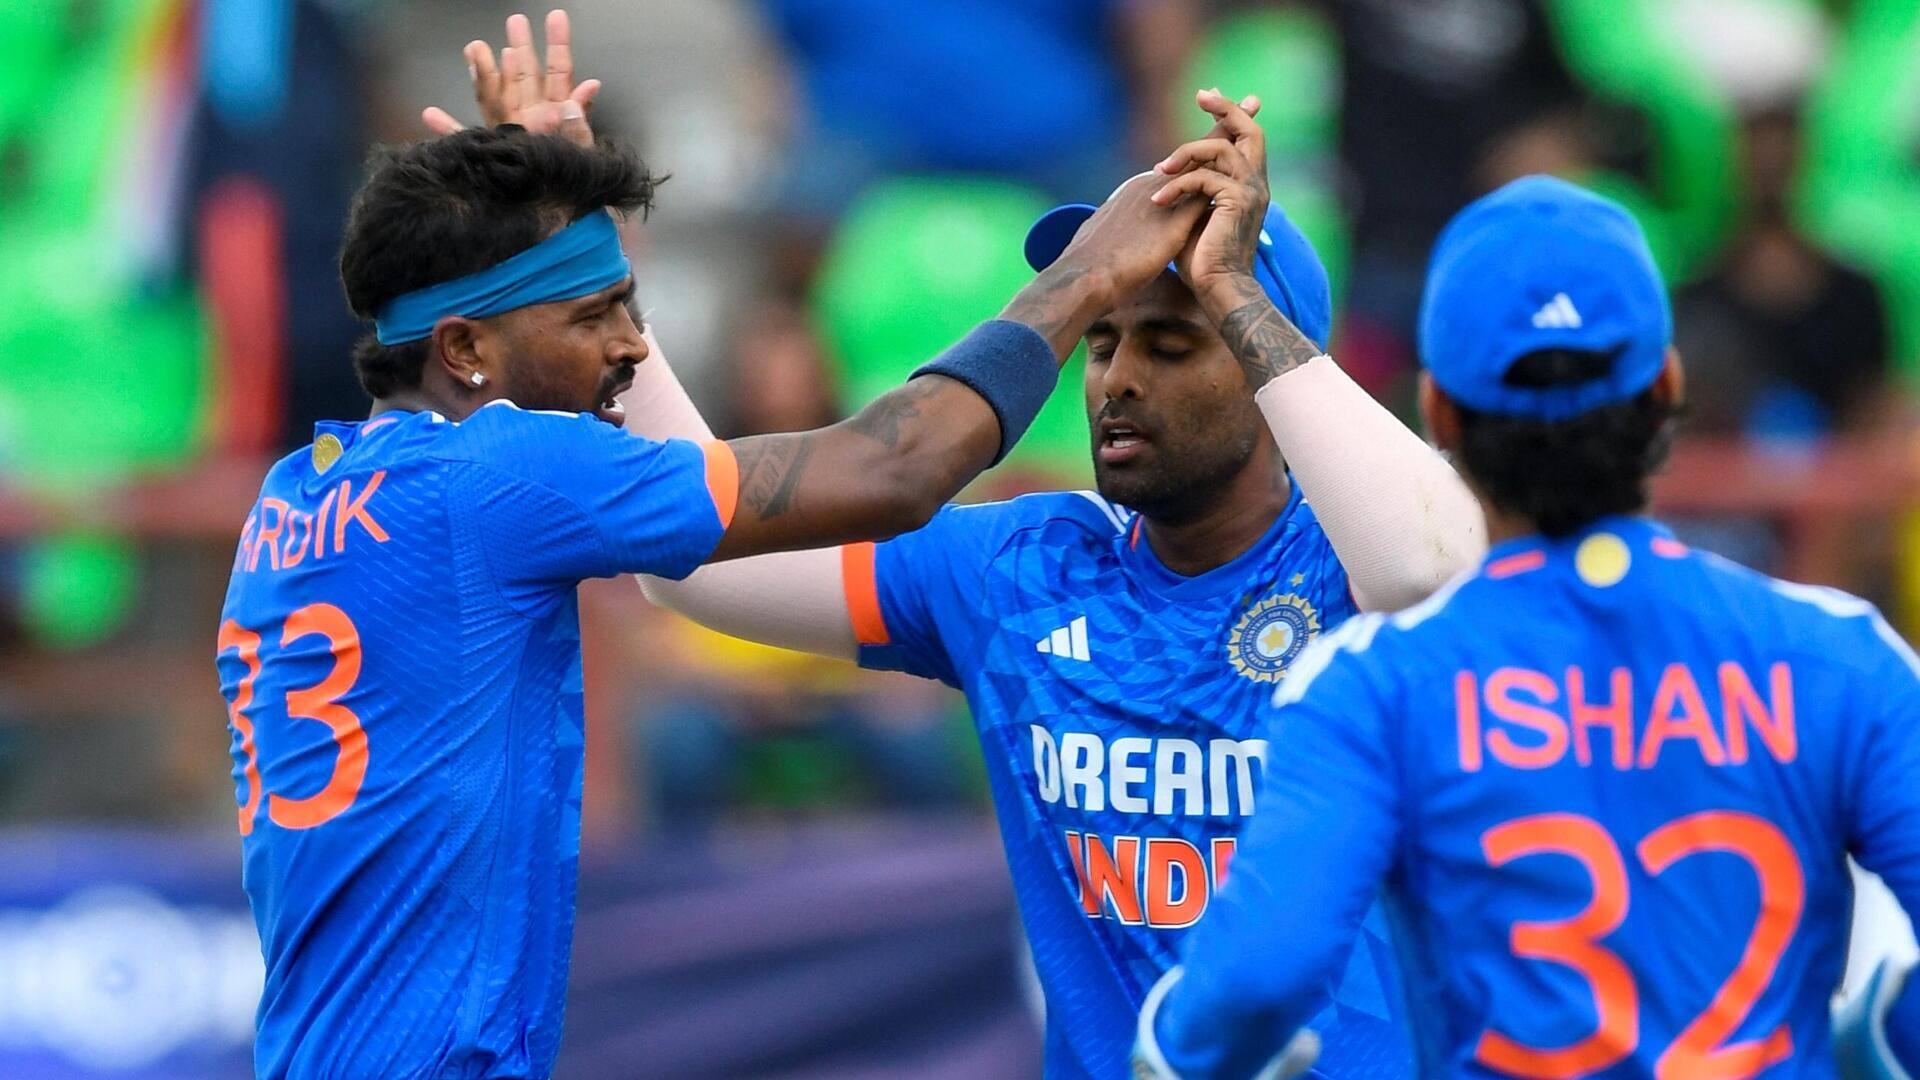 भारतीय टीम अब तक नहीं हारी 5 मैचों की द्विपक्षीय टी-20 सीरीज, जानिए कैसा रहा प्रदर्शन